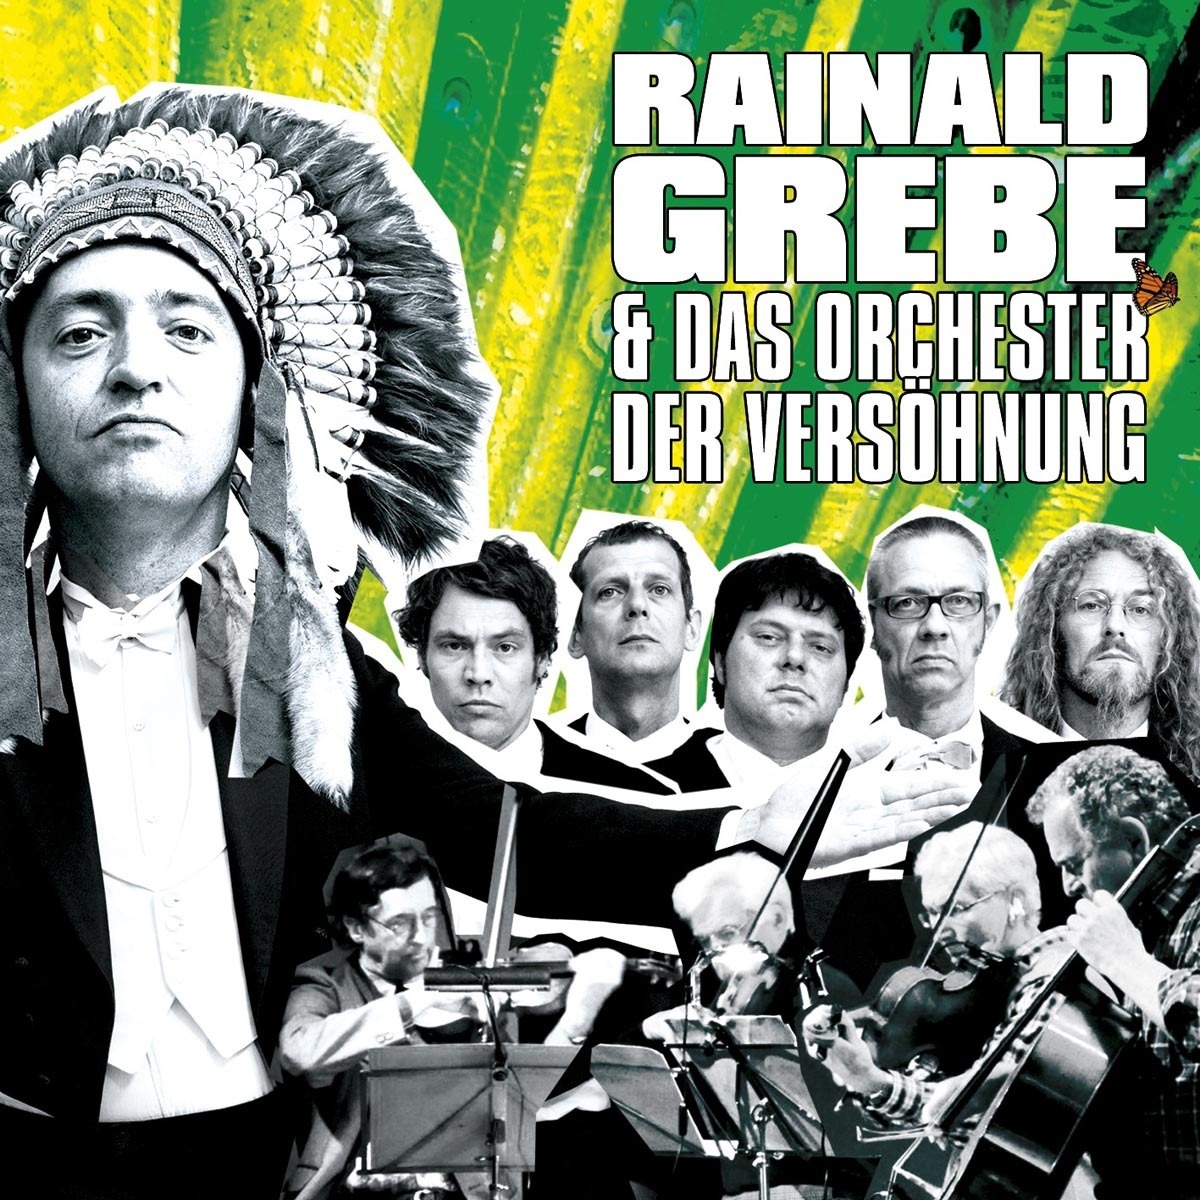 Rainald Grebe & Das Orchester Der Versoehnung - Rainald Grebe & Das Orchester Der Versöhnung (Hörbuch)